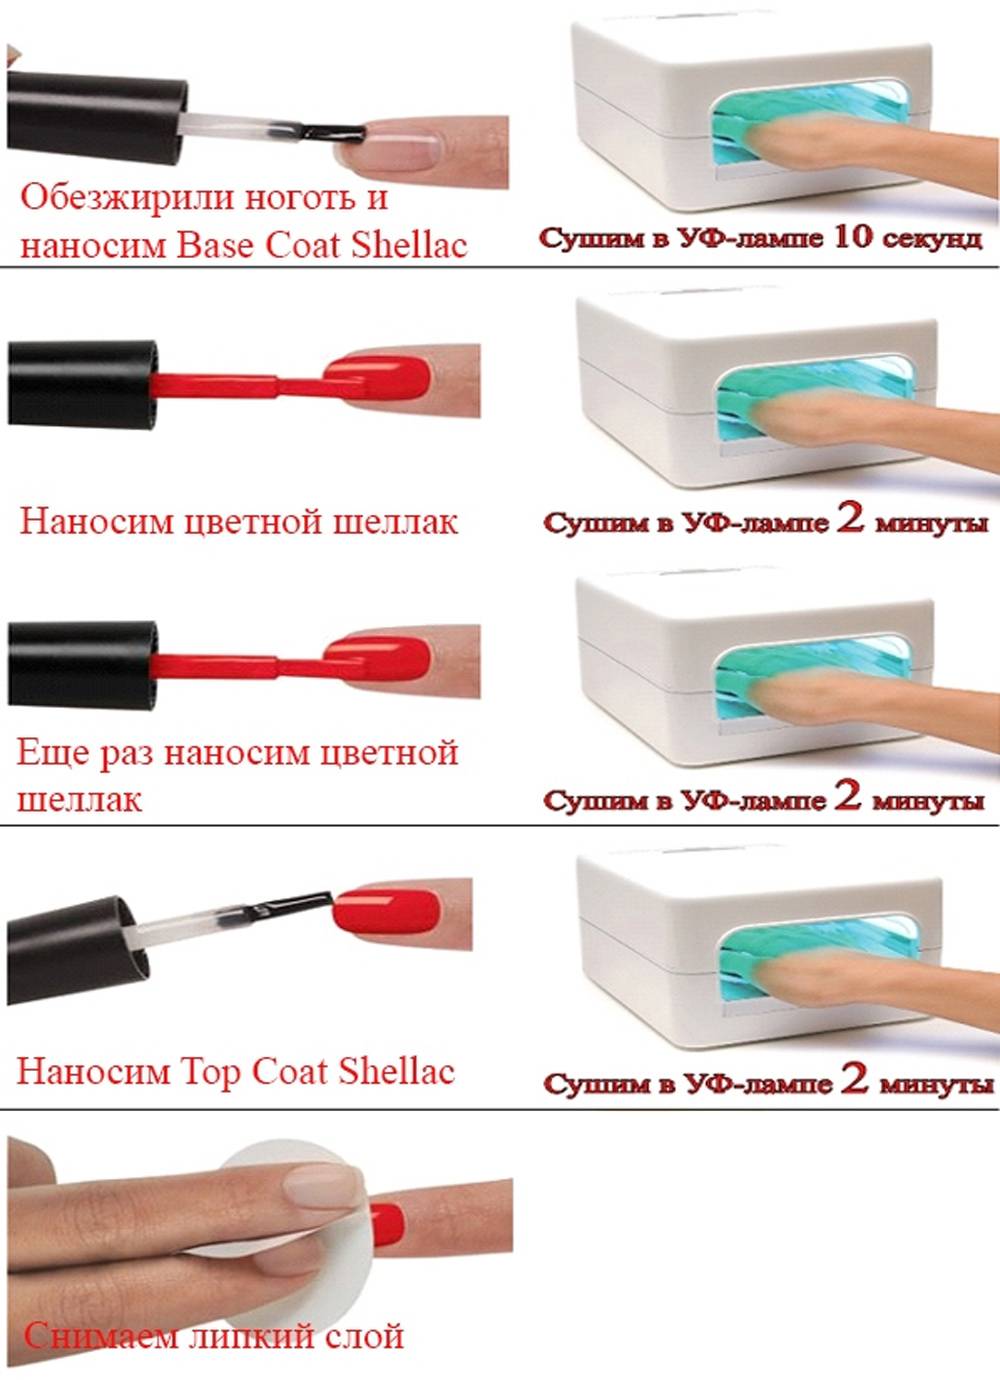 Как делать шеллак: необходимые материалы и инструменты, пошаговая инструкция нанесения, уход за ногтями